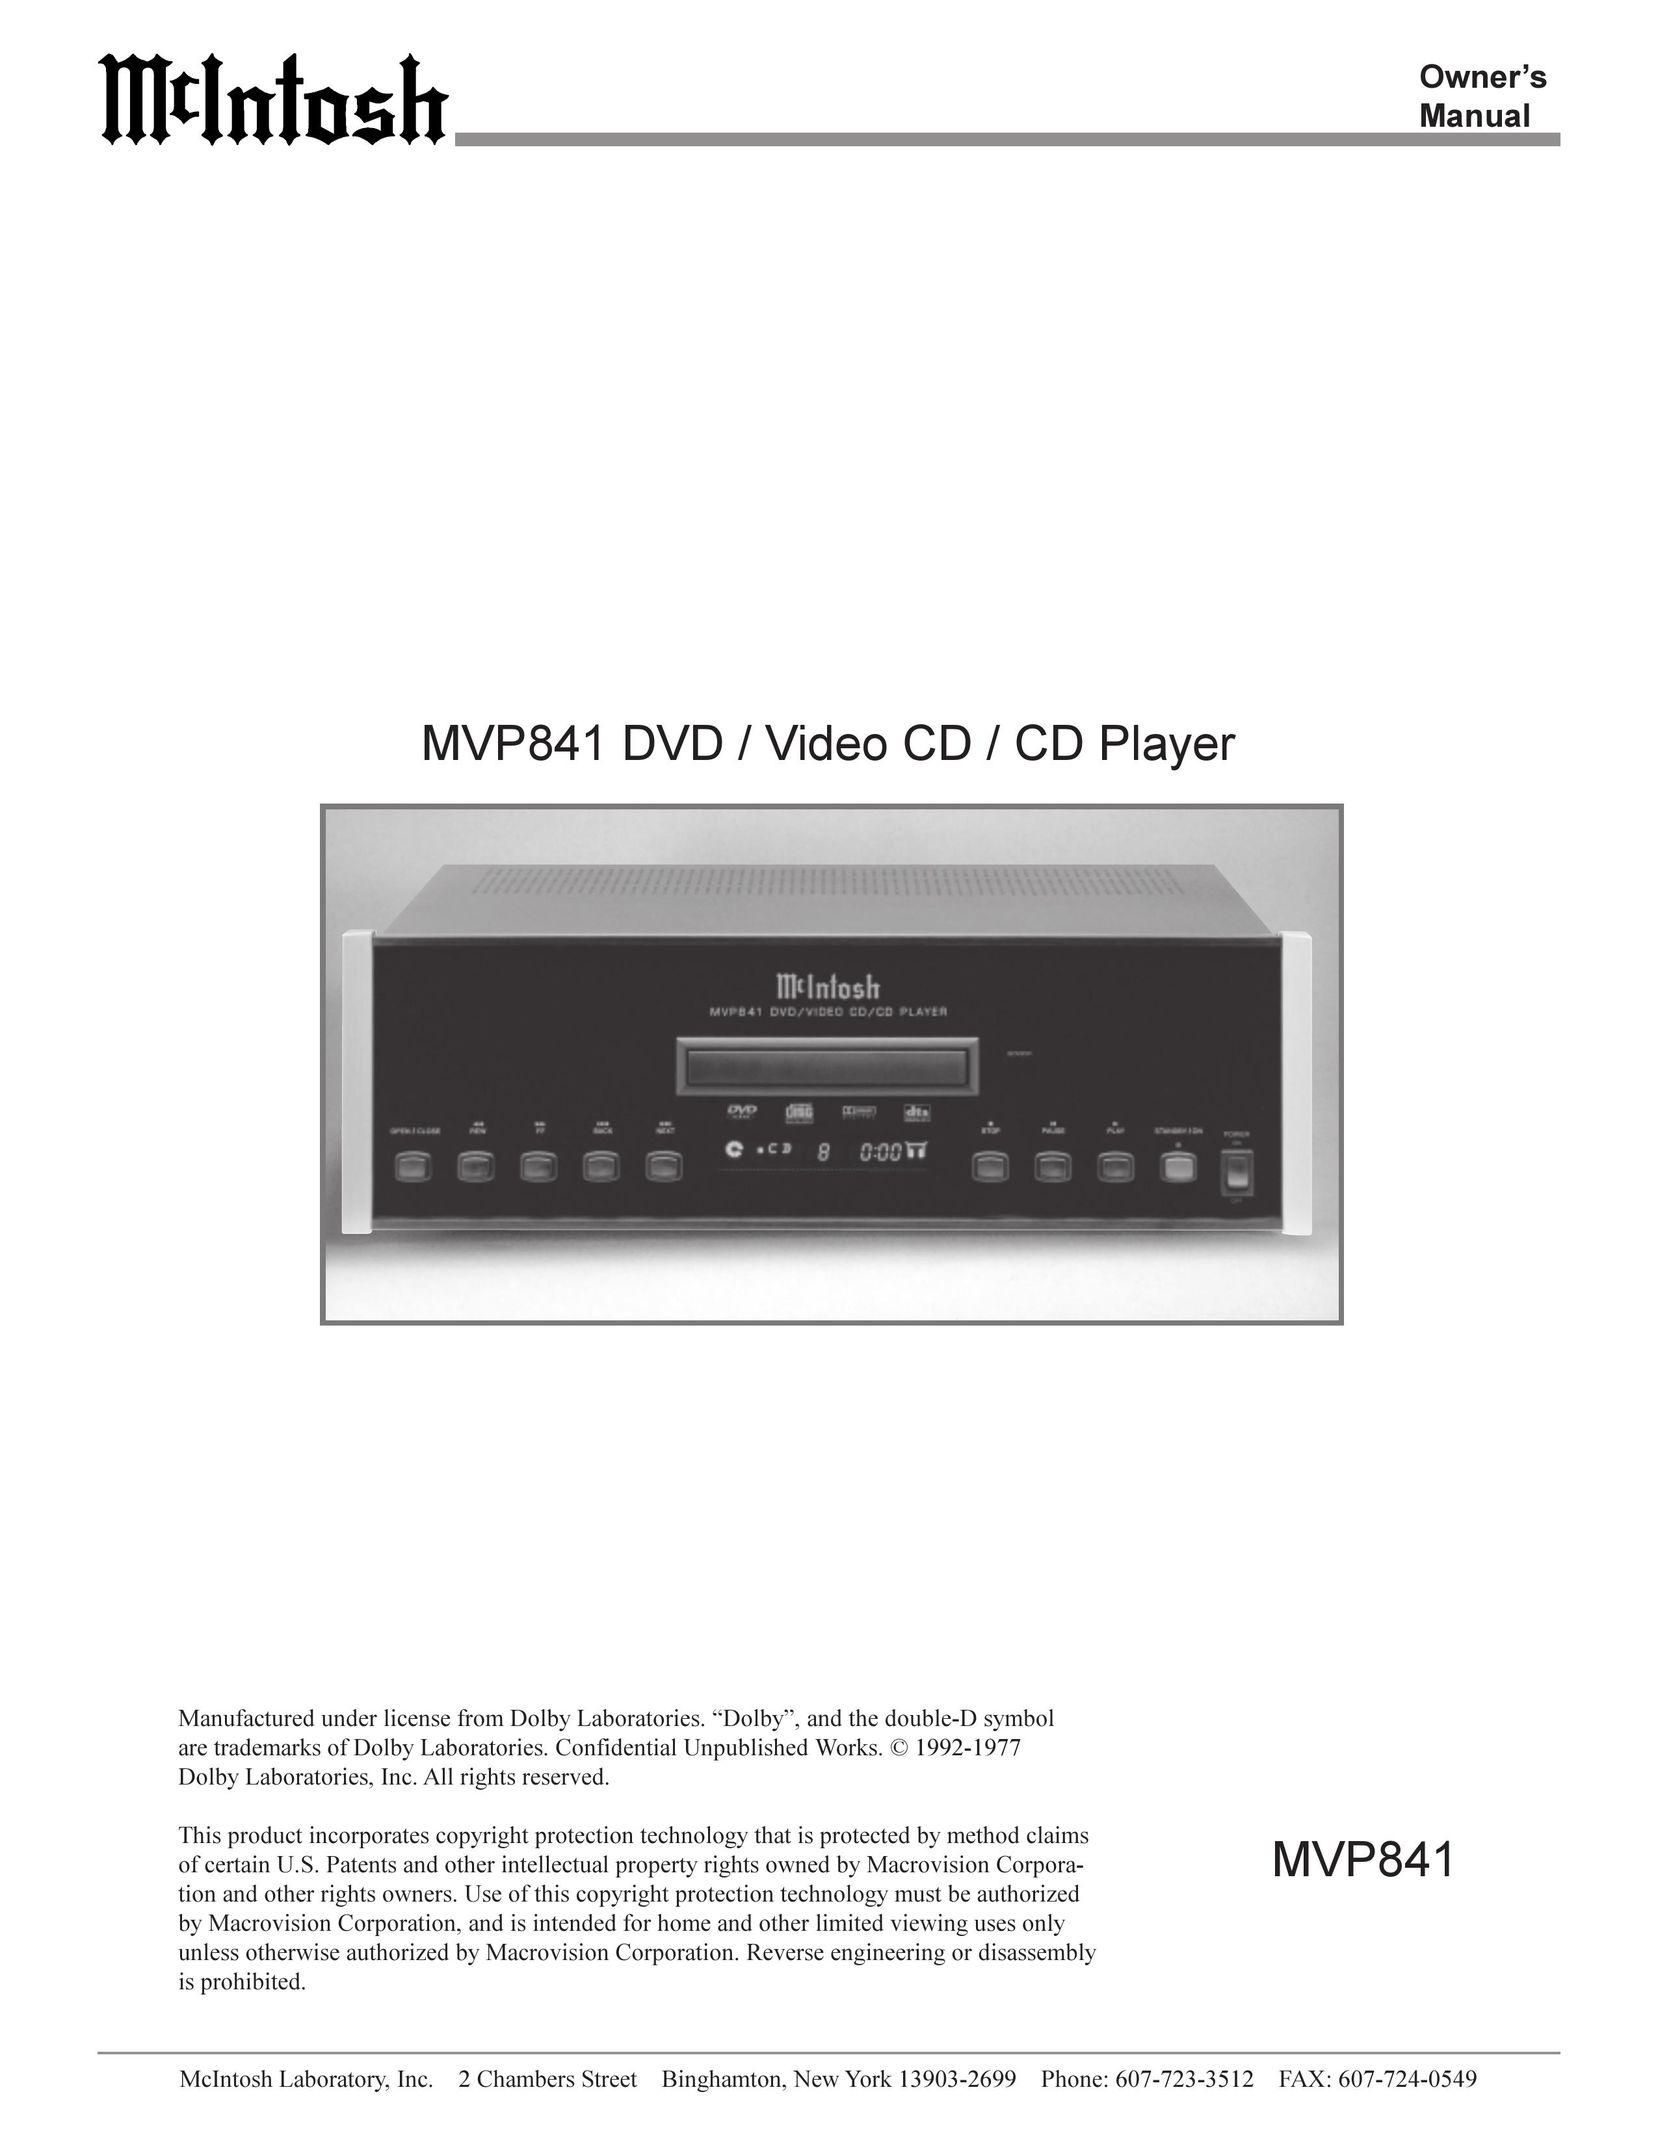 Sonic Blue MVP841 CD Player User Manual